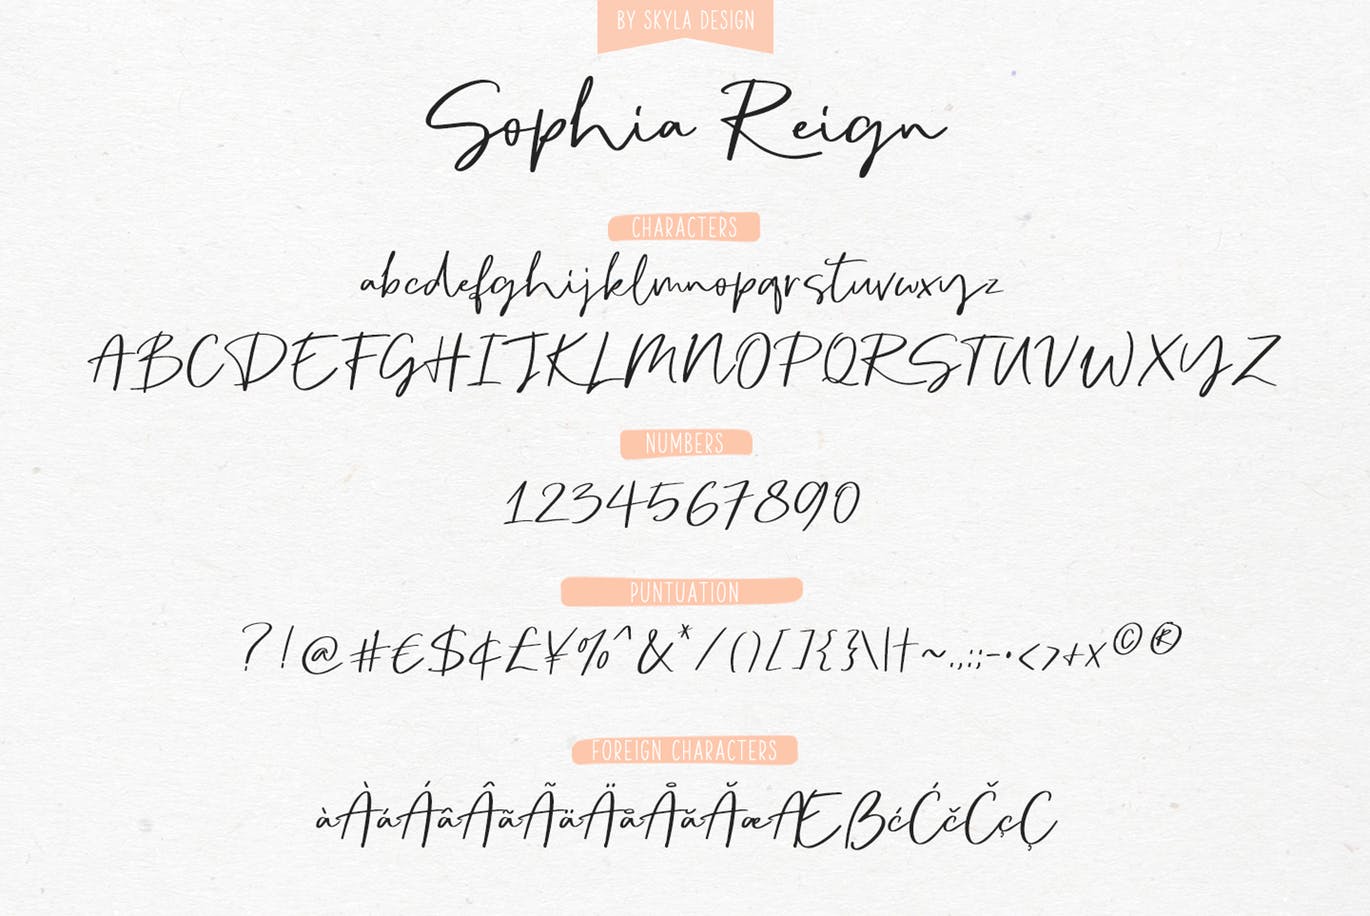 英文钢笔签名字体非凡图库精选&大写字母正楷字体非凡图库精选二重奏 Sophia Reign signature font duo插图(10)